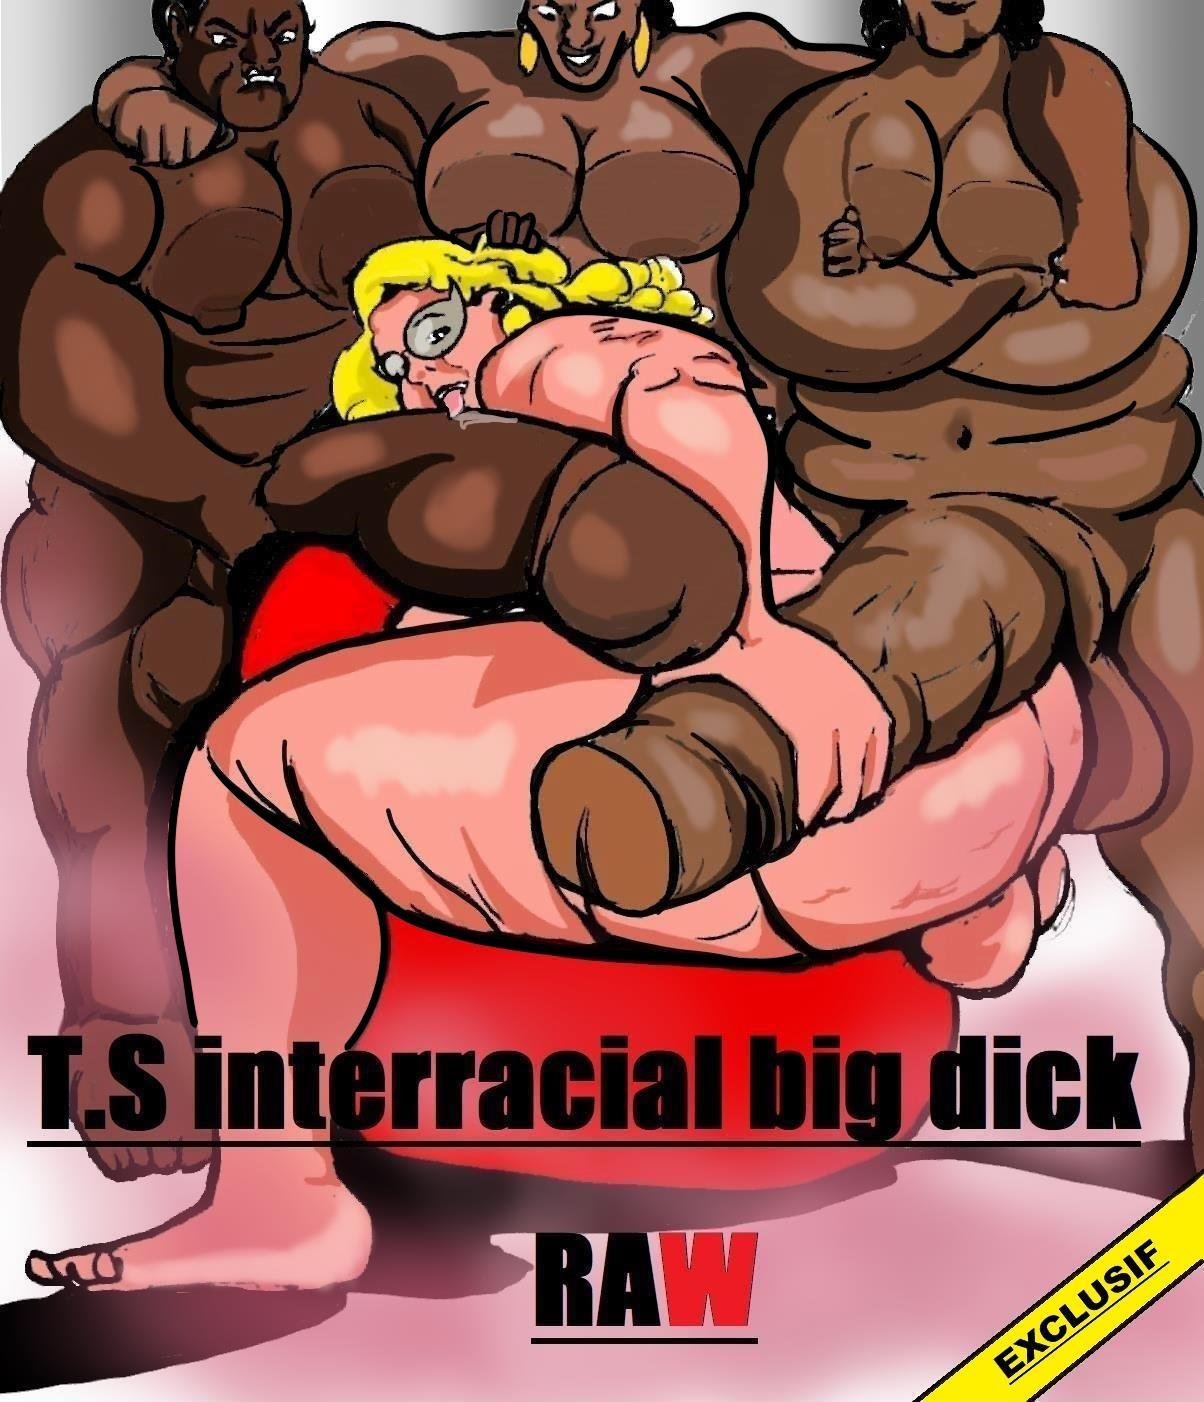 Fat Black Shemale Raw - T.S Interracial big dick RAW Â» Porn comics free online